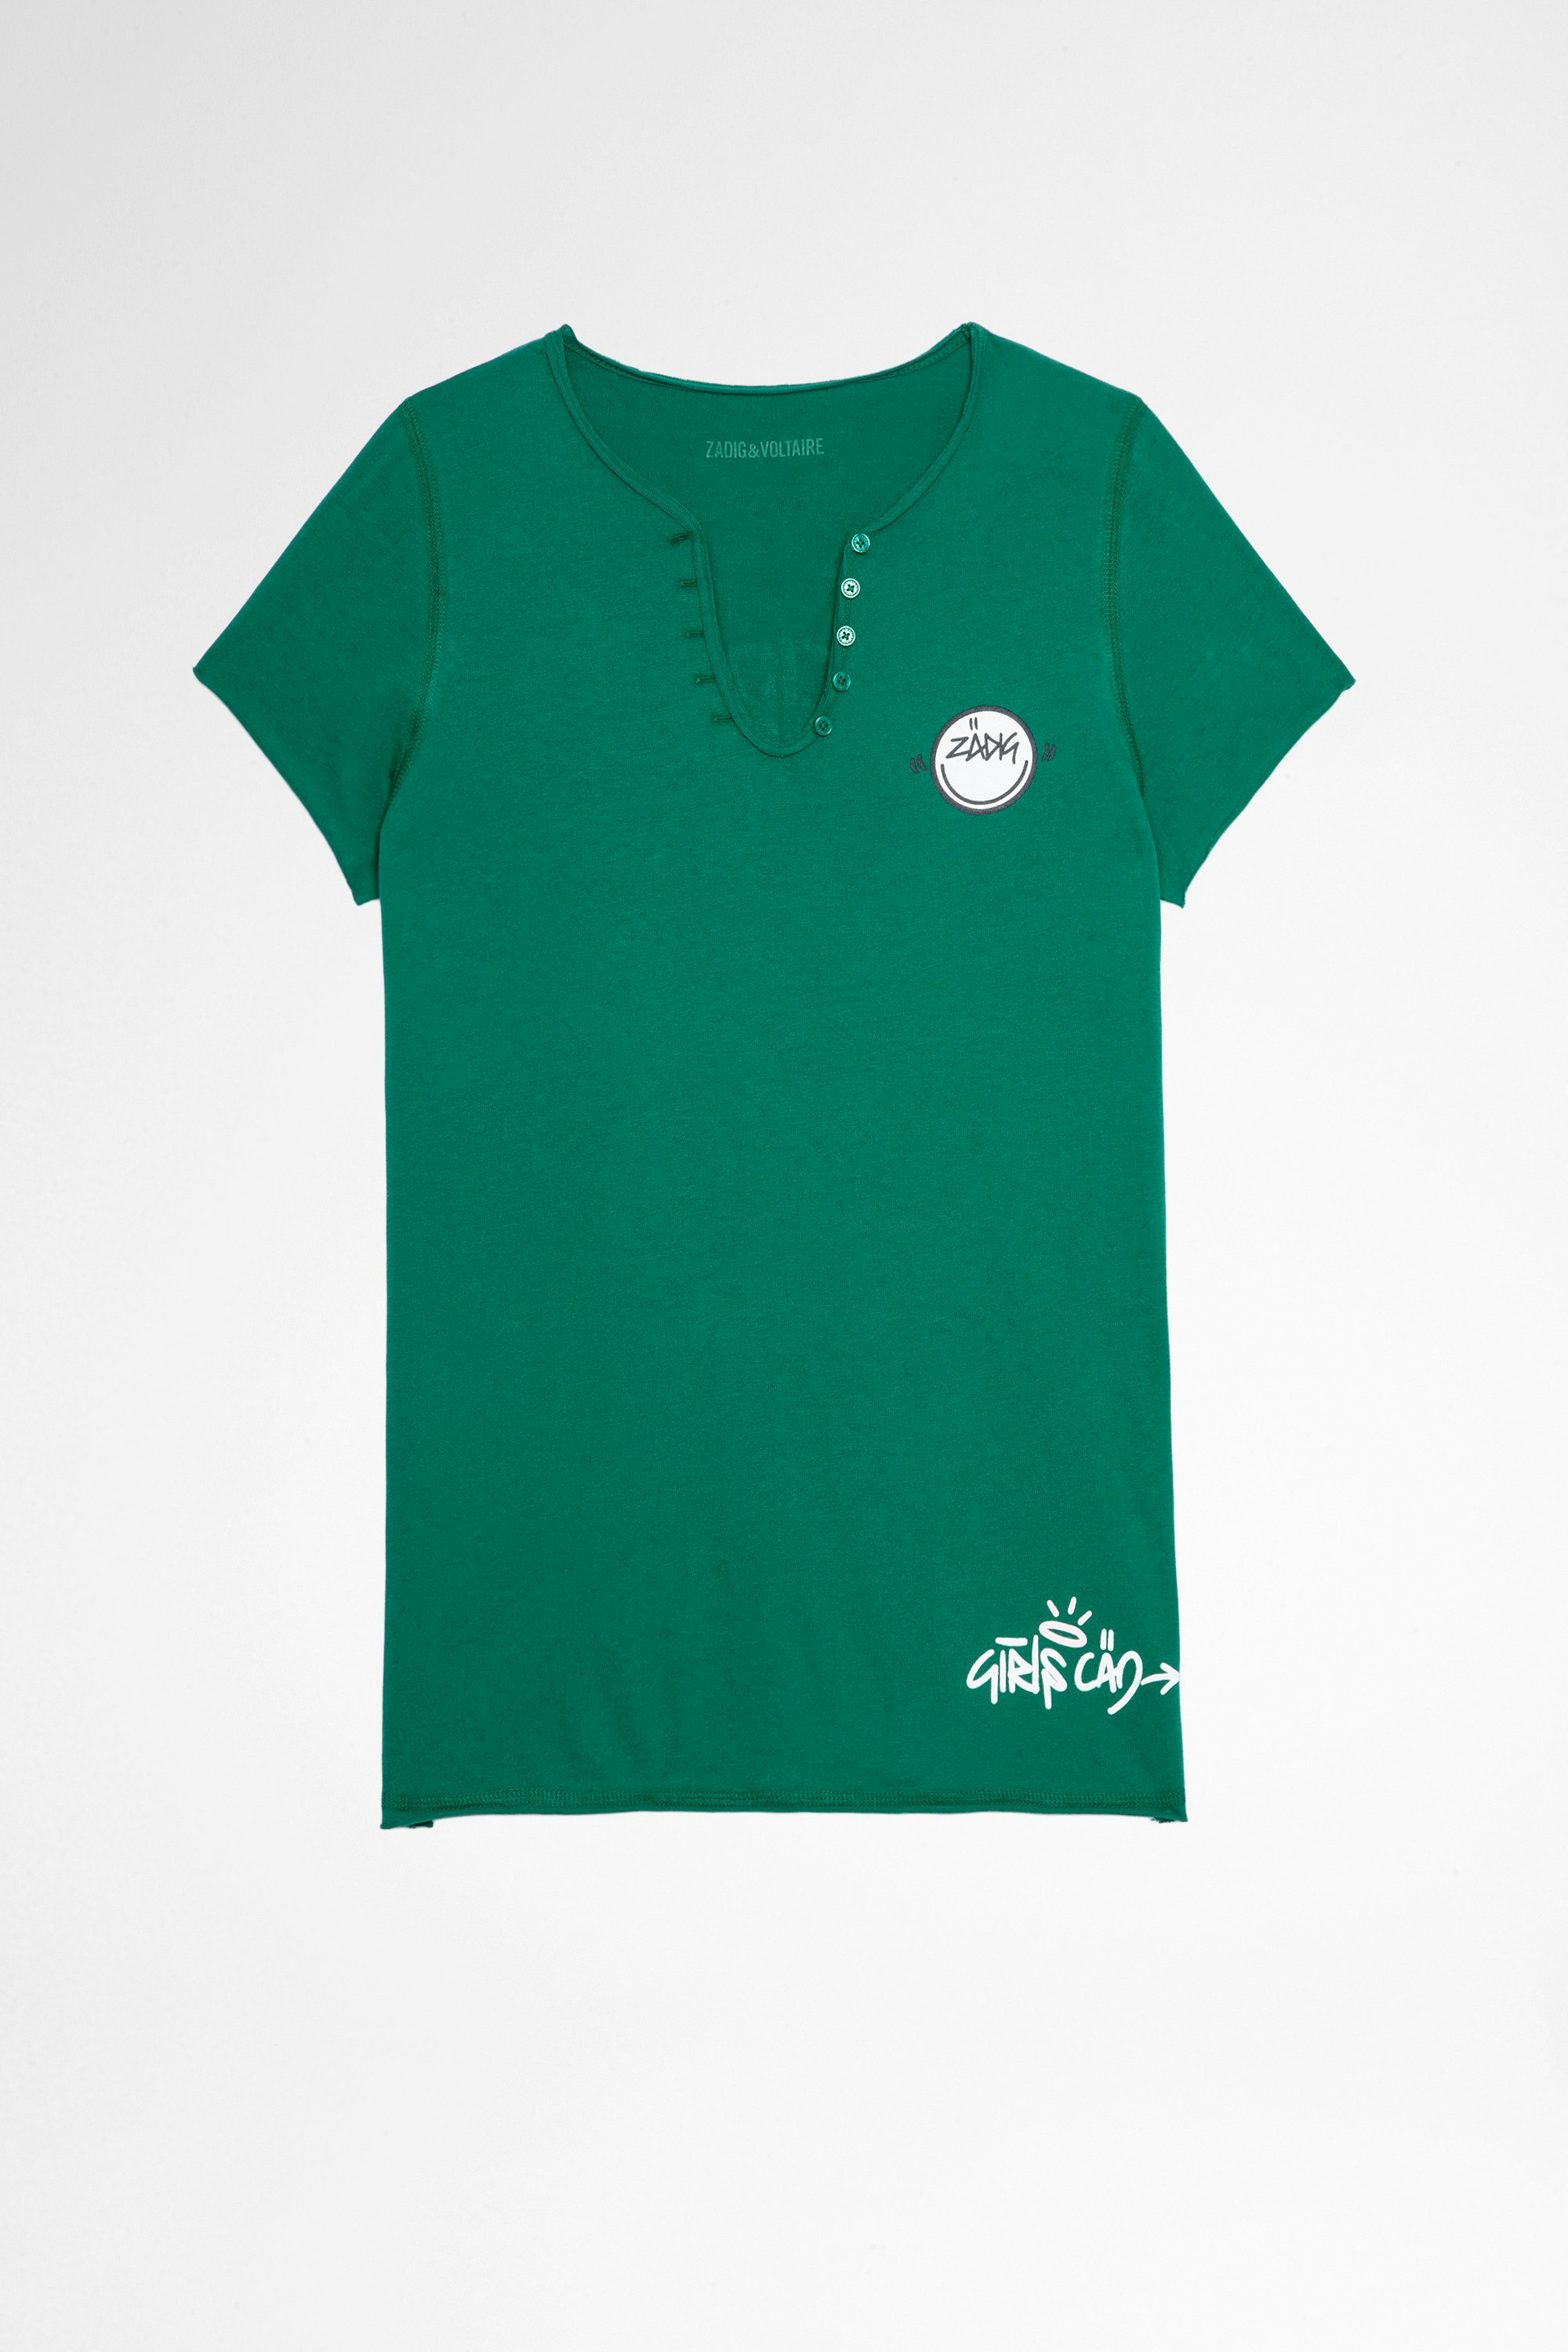 T-Shirt Tunisien Multicusto T-shirt en coton vert à col tunisien Girls can do anything Femme. Ce produit est certifié GOTS et fait à partir de fibres issues de l’agriculture biologique.